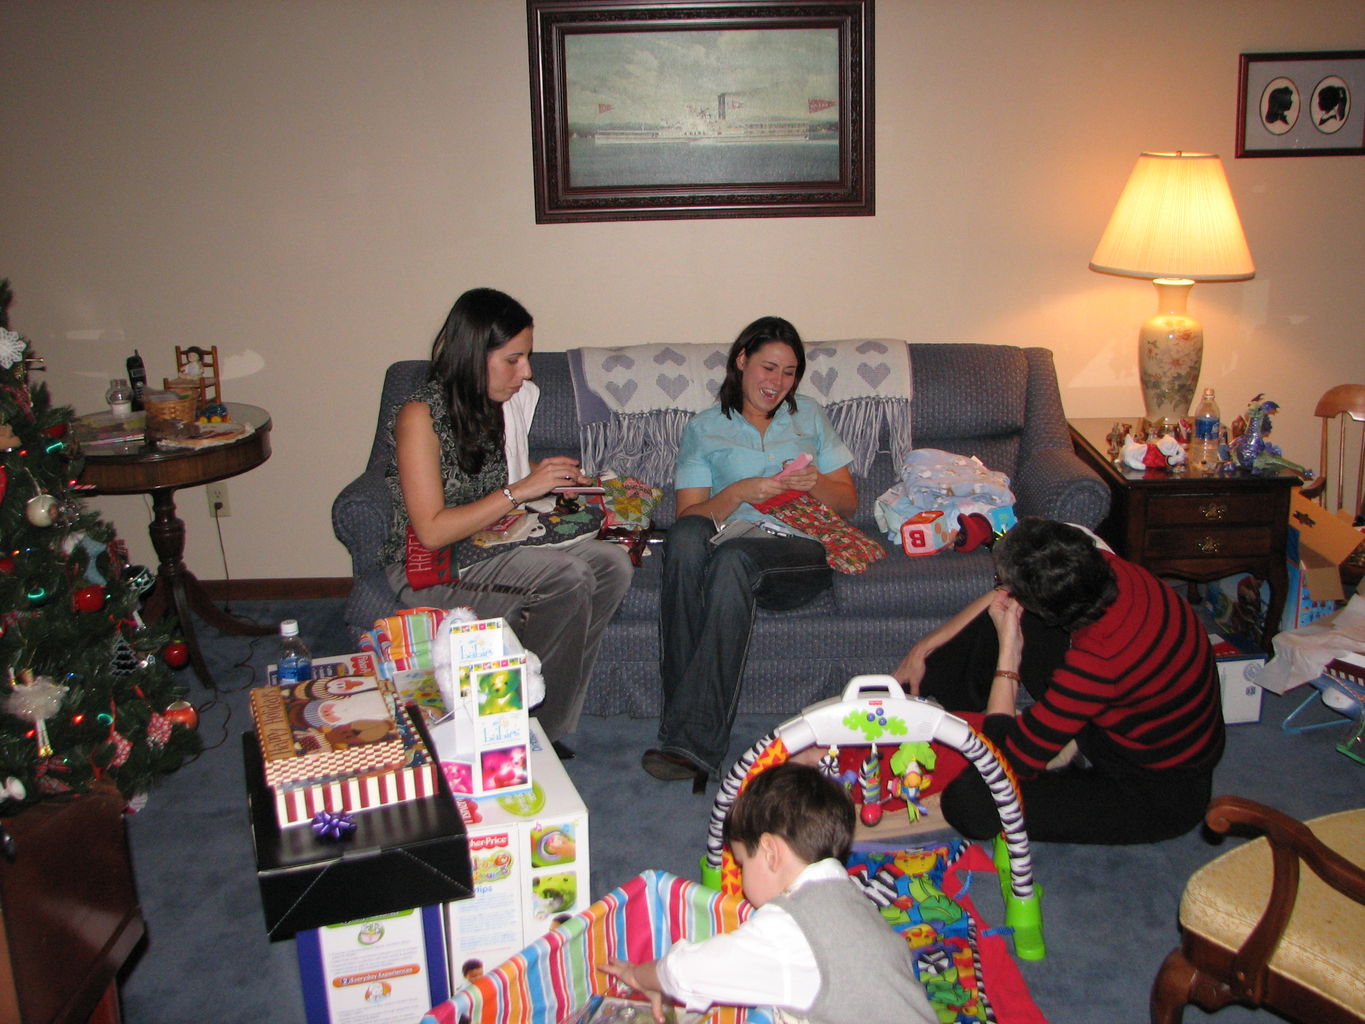 Christmas Eve 2006
